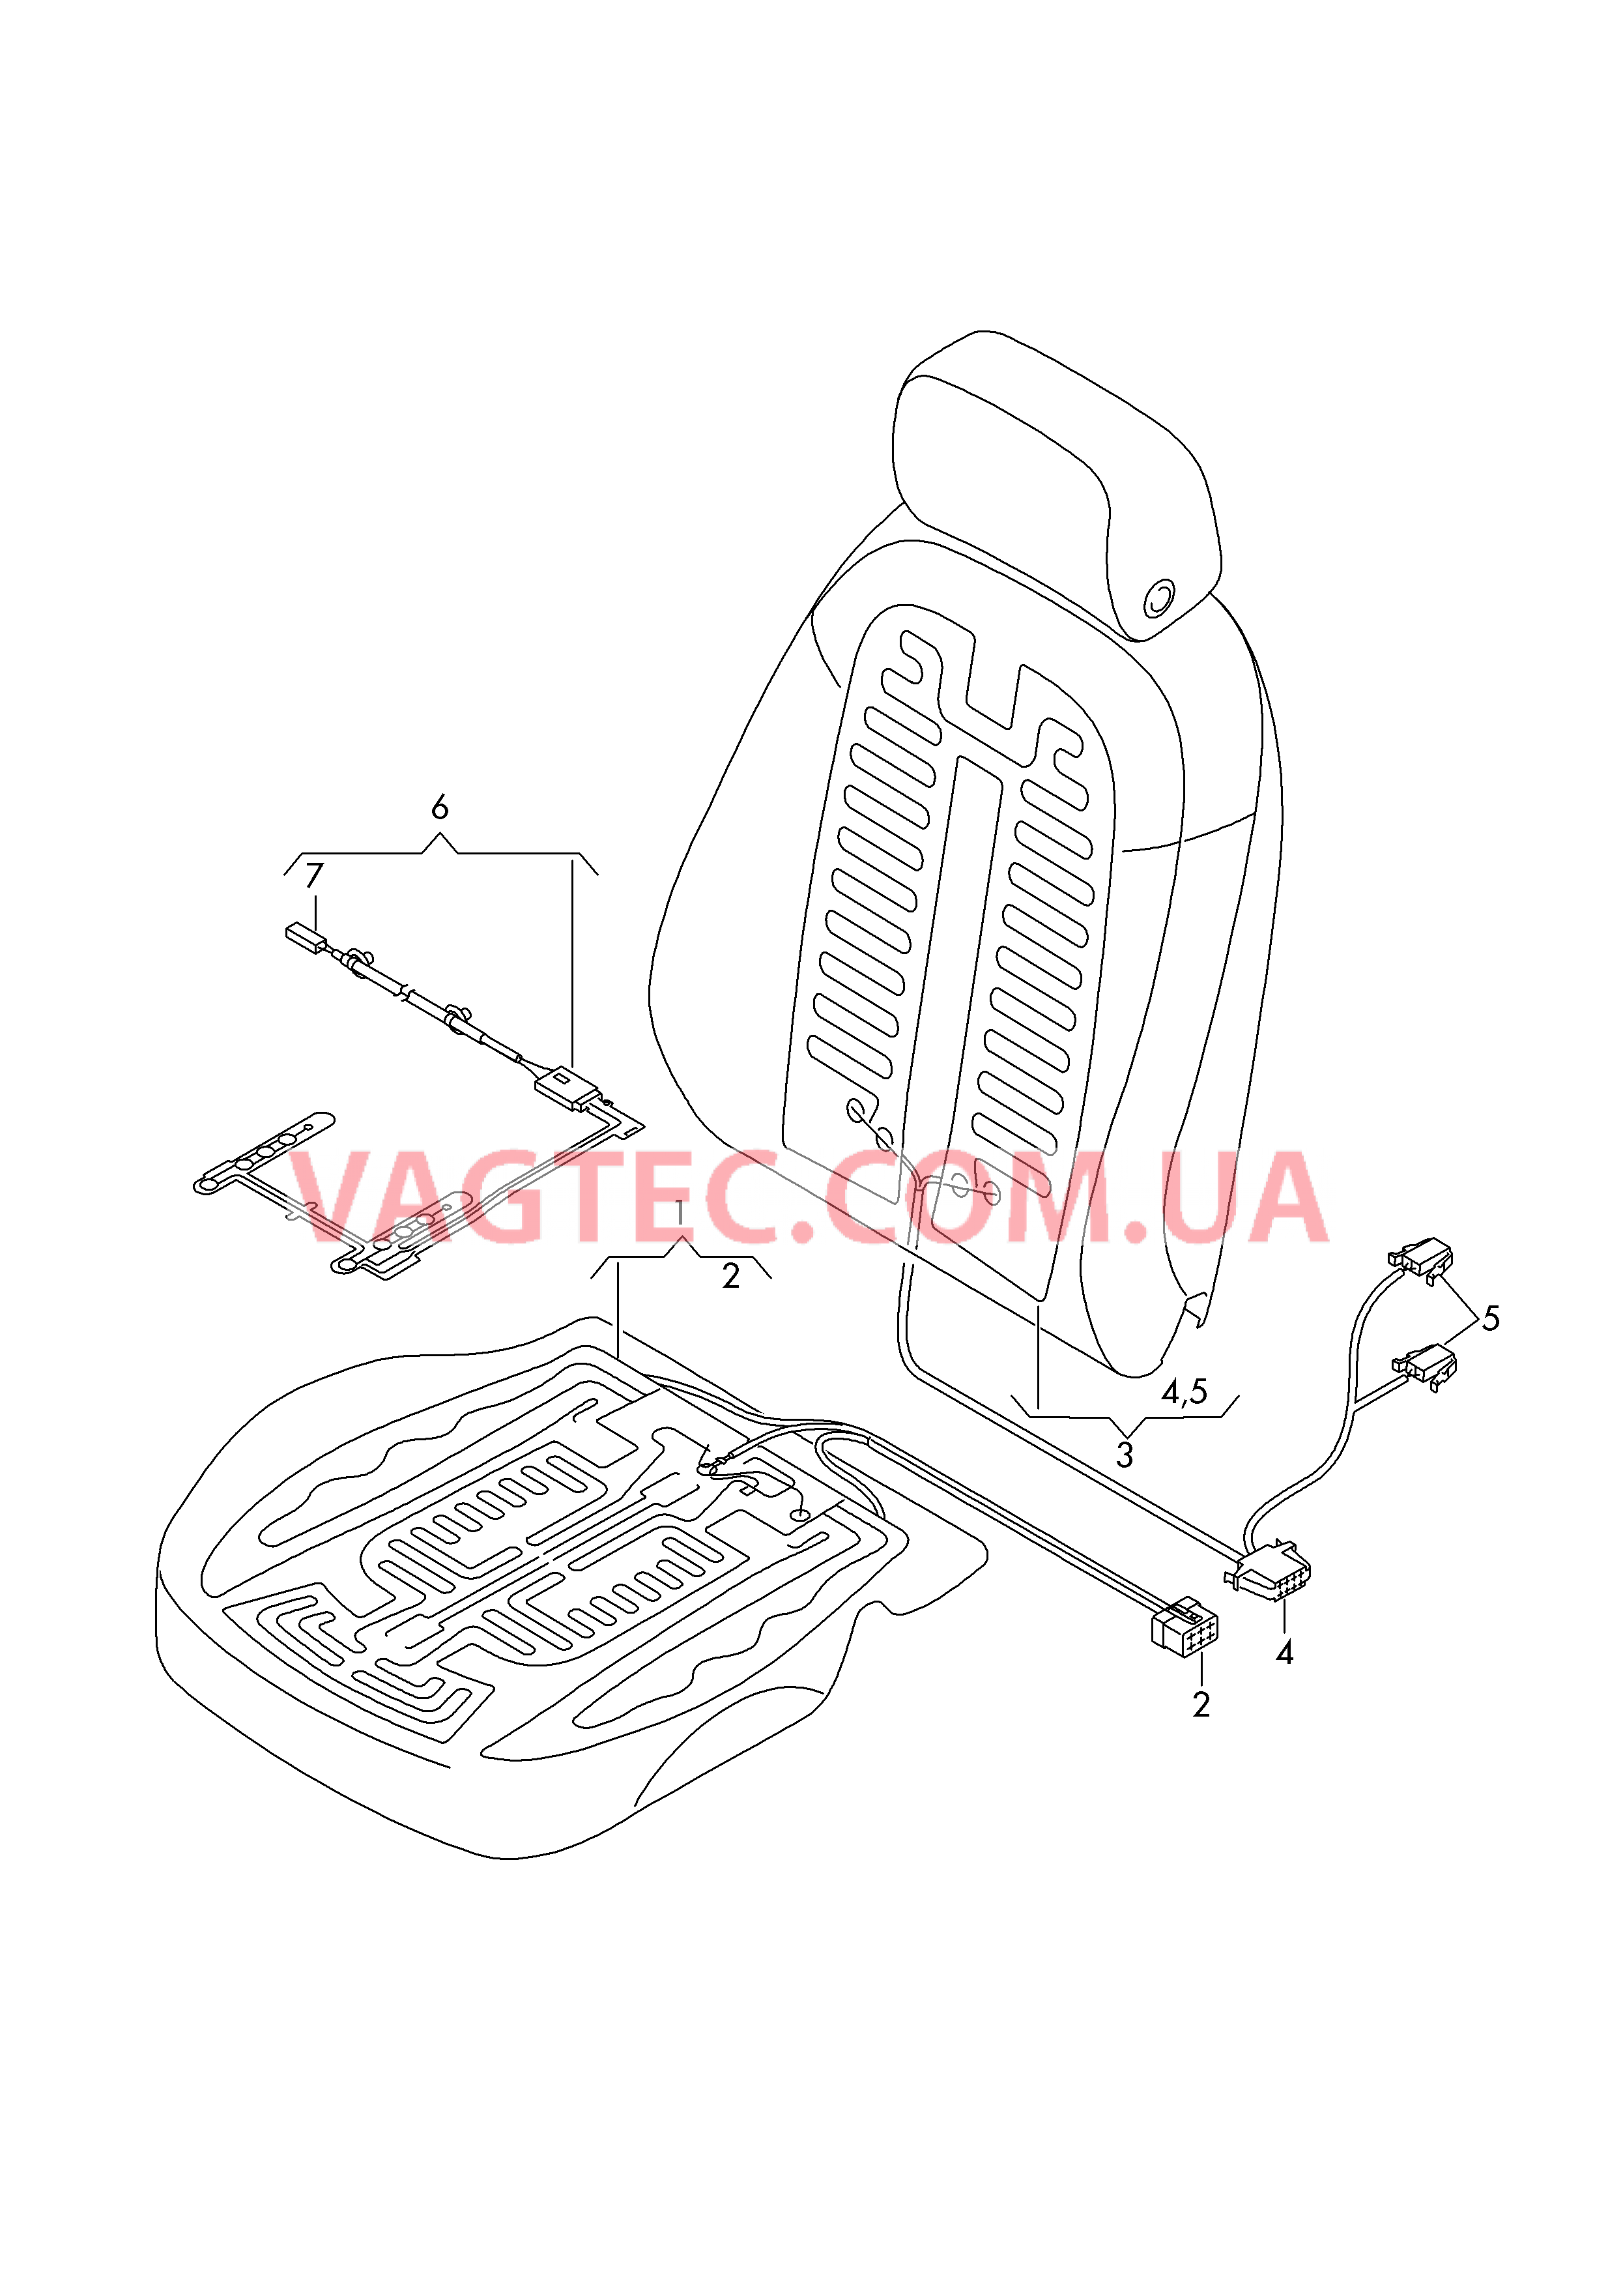 Нагревательный элемент спинки и подушки сиденья  Вставка распознавания занятости сиденья  для AUDI A6Q 2016